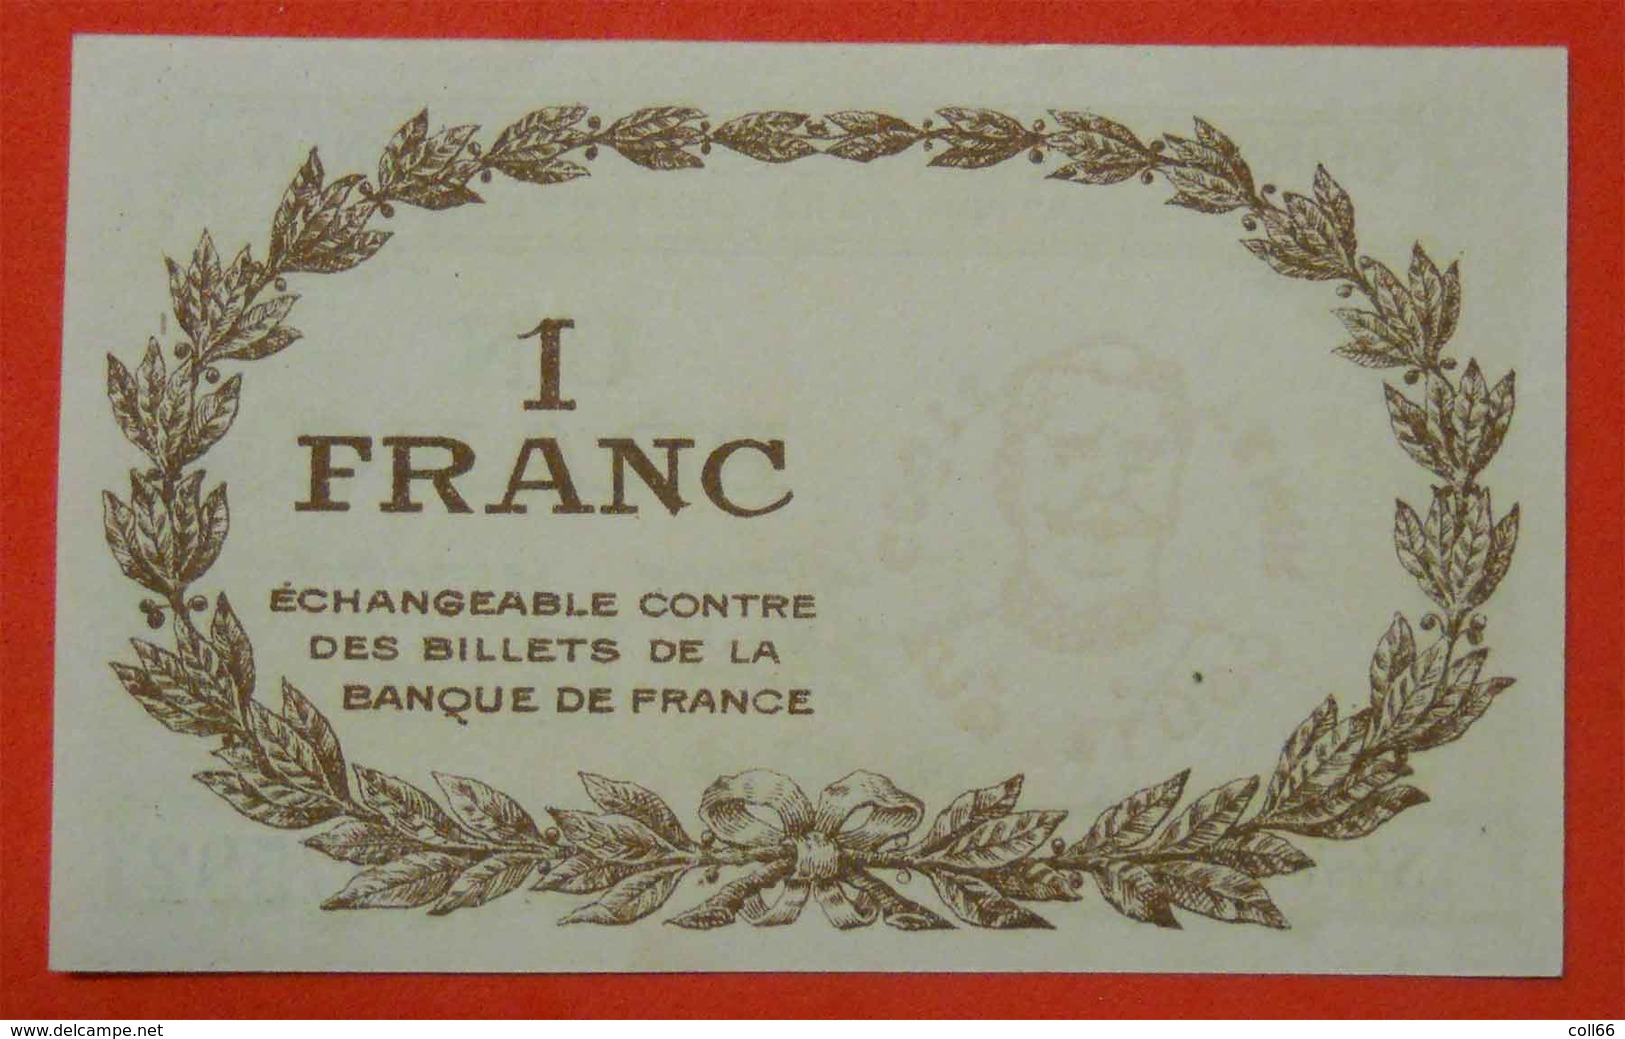 1918 Ww1 Billet Chambre Commerce Perpignan Maréchal Joffre Imp Morer Nenezet Perpignan 1 Franc  66 PO Catalan - Guerre 1914-18